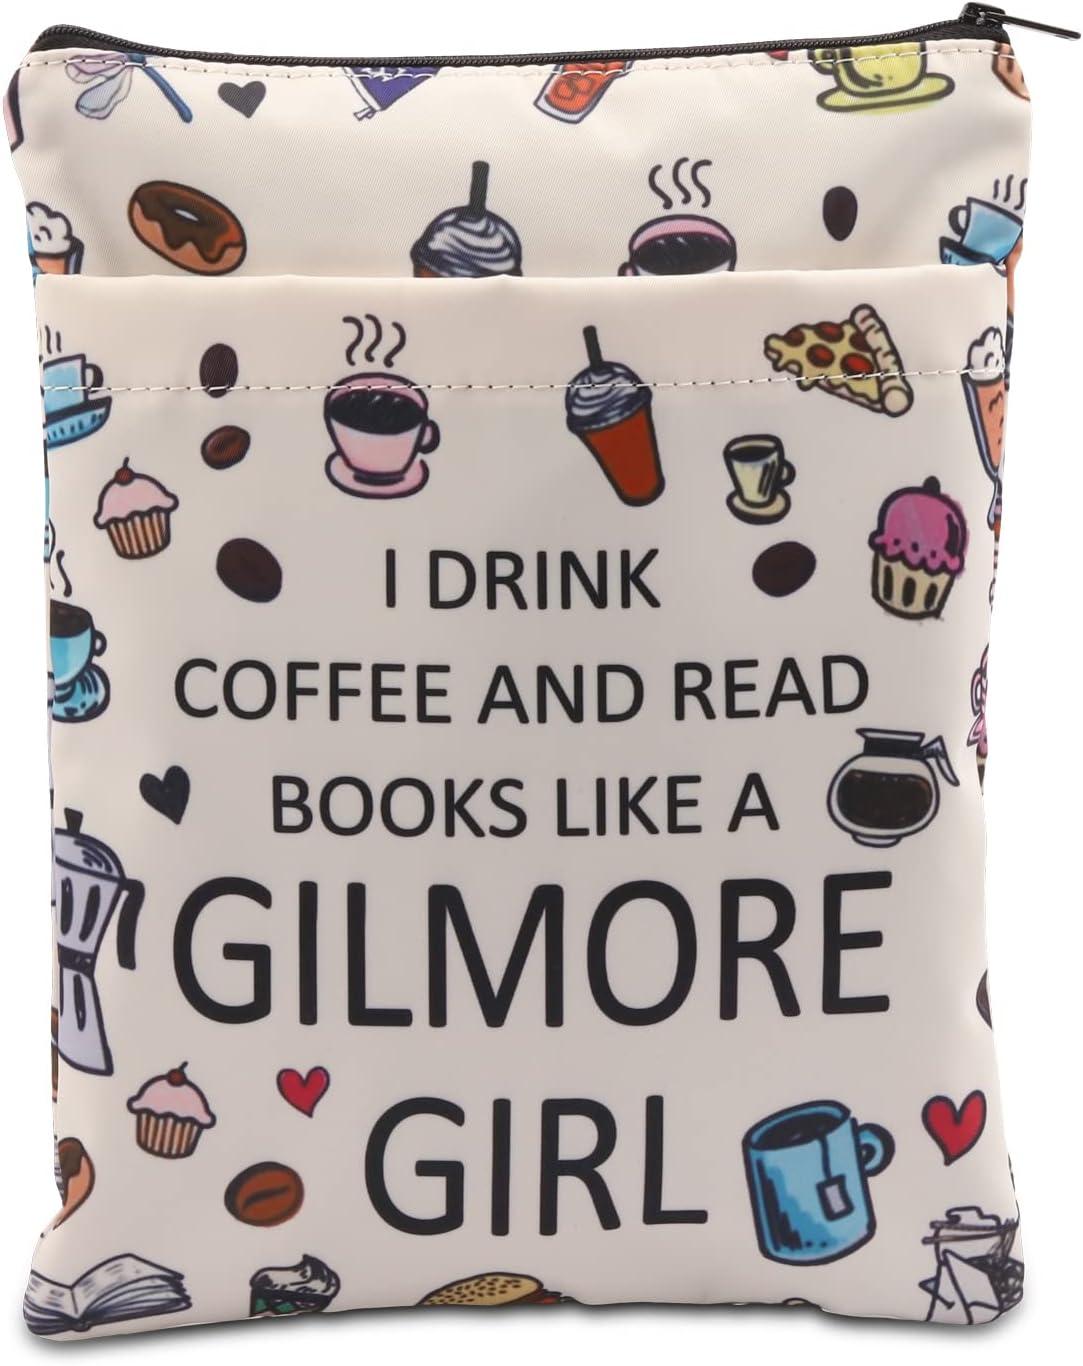 Ett vitt bokfodral med kaffe och bakverk där det står "I drink coffee and read books like a gilmore girl"